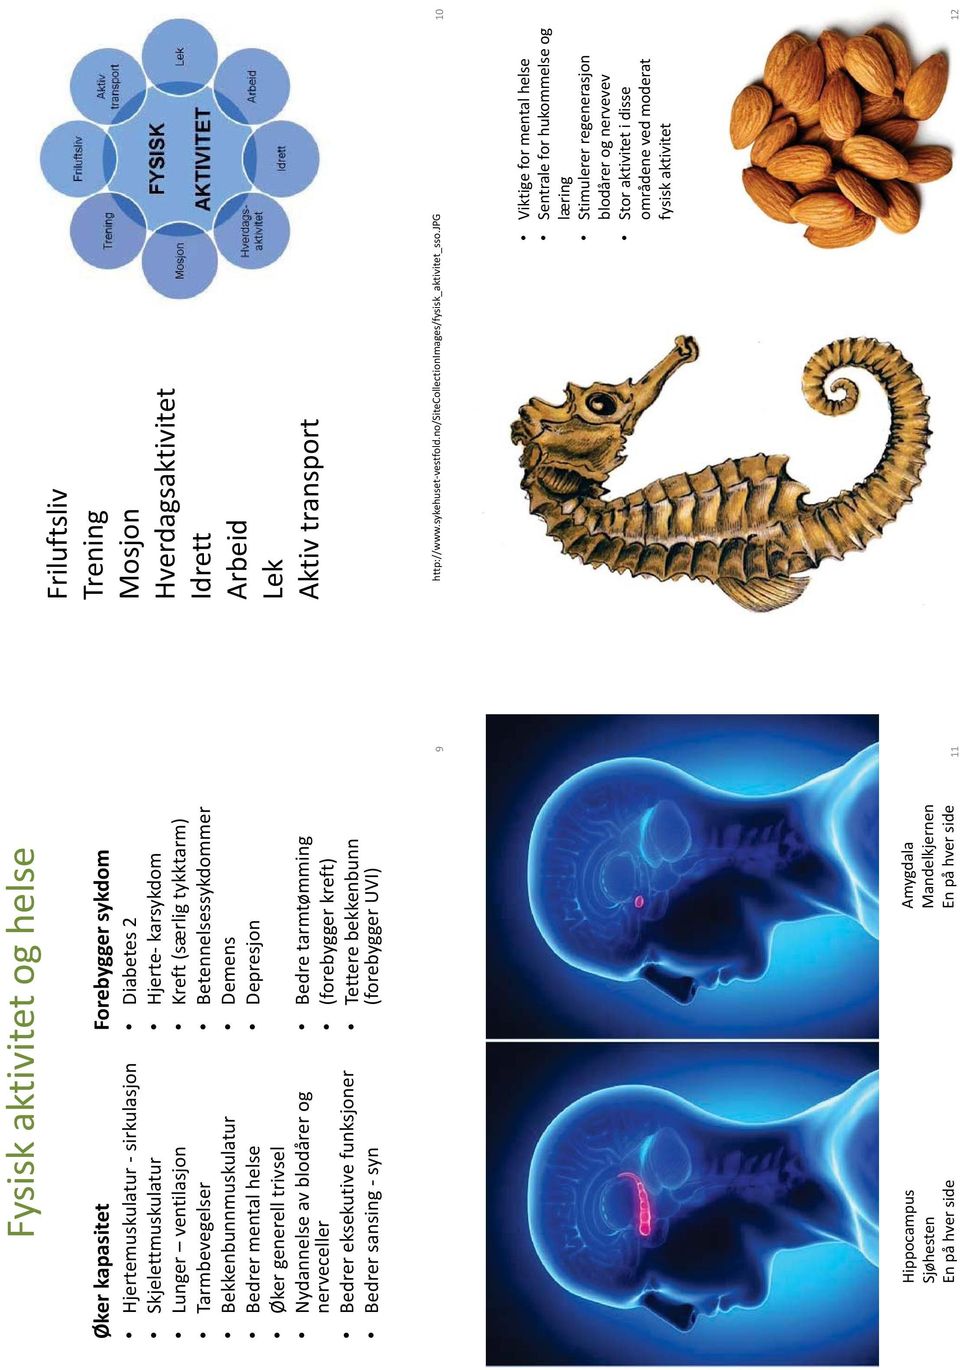 tarmtømming (forebygger kreft) Tettere bekkenbunn (forebygger UVI) Hippocampus Sjøhesten En på hver side Amygdala Mandelkjernen En på hver side 11 Friluftsliv Trening Mosjon Hverdagsaktivitet Idrett